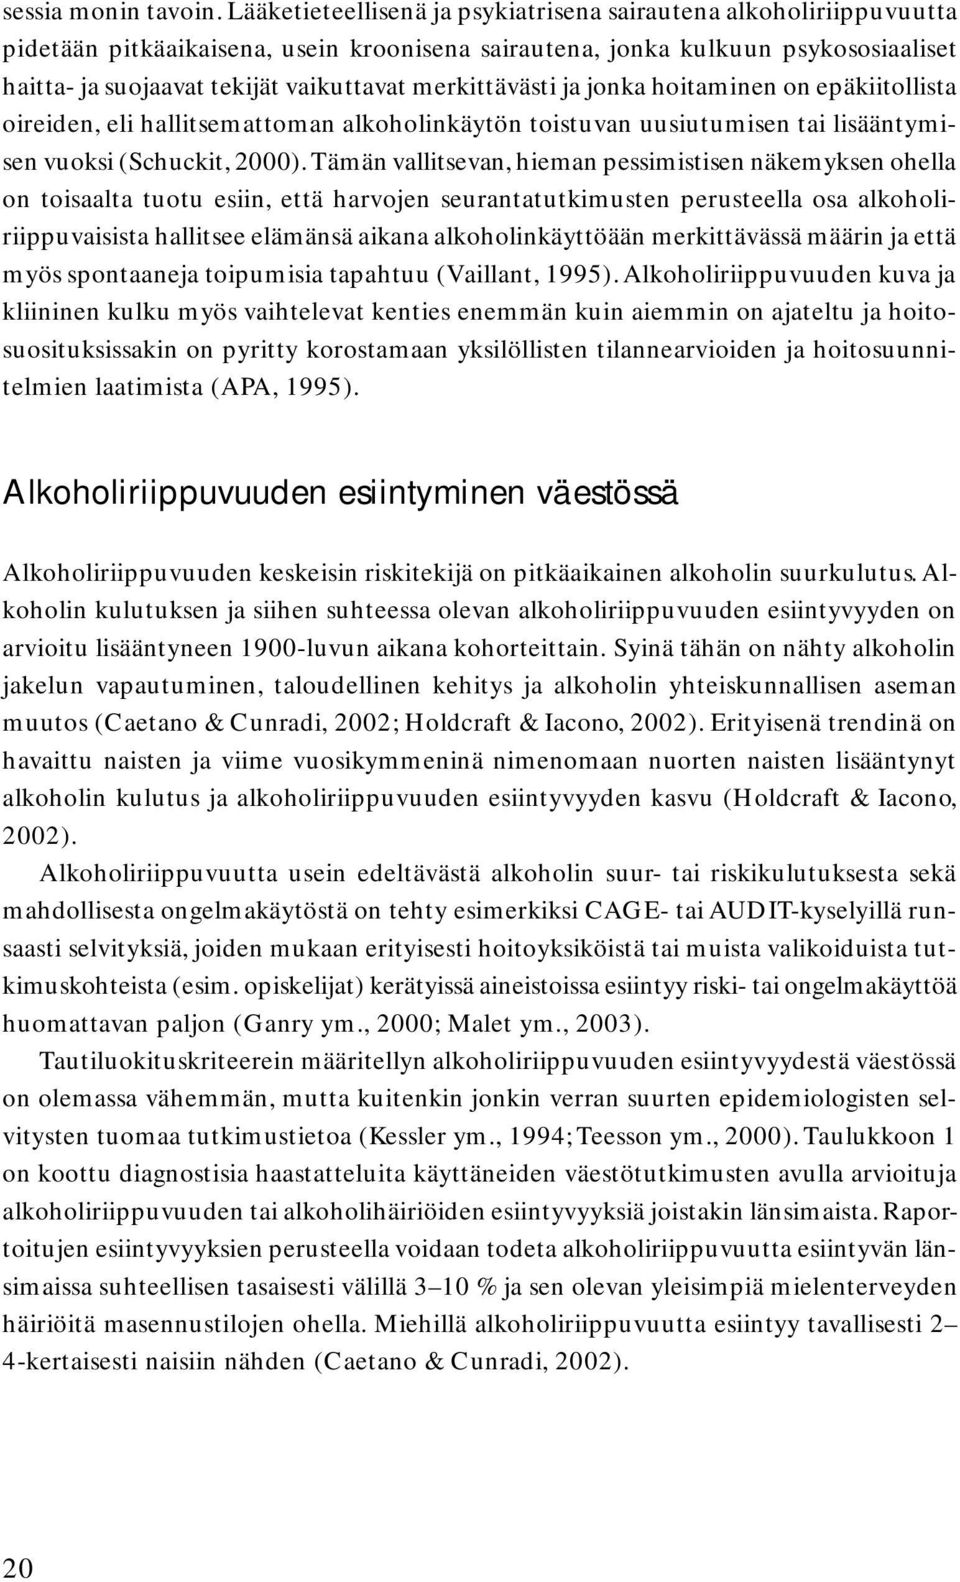 merkittävästi ja jonka hoitaminen on epäkiitollista oireiden, eli hallitsemattoman alkoholinkäytön toistuvan uusiutumisen tai lisääntymisen vuoksi (Schuckit, 2000).